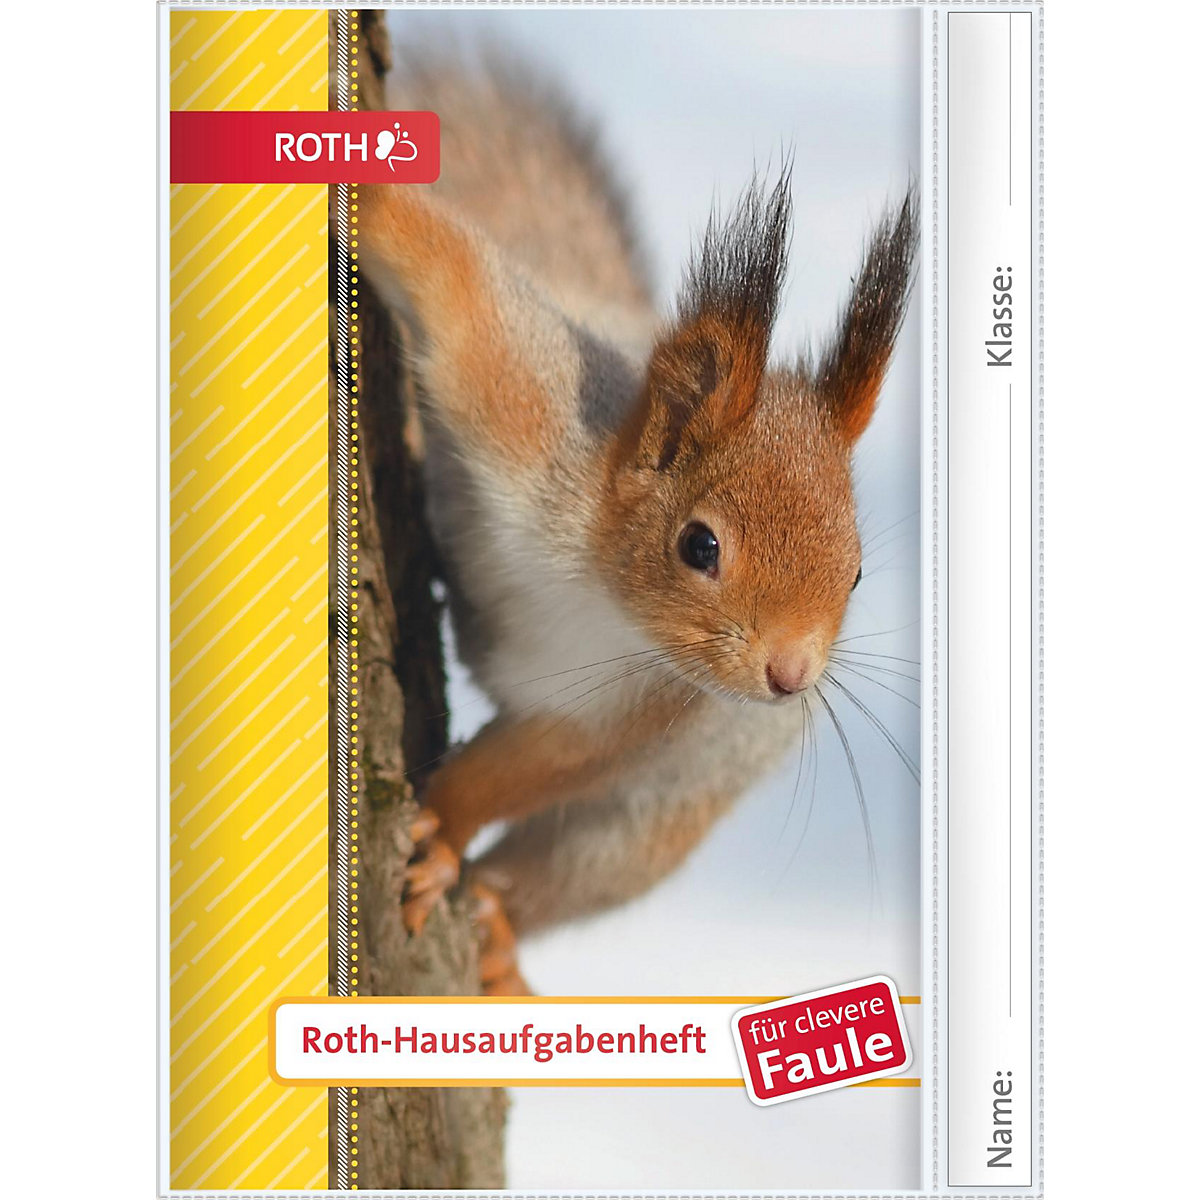 ROTH Hausaufgabenheft Für clevere Faule Eichhörnchen A5 104 Seiten in Schutzumschlag